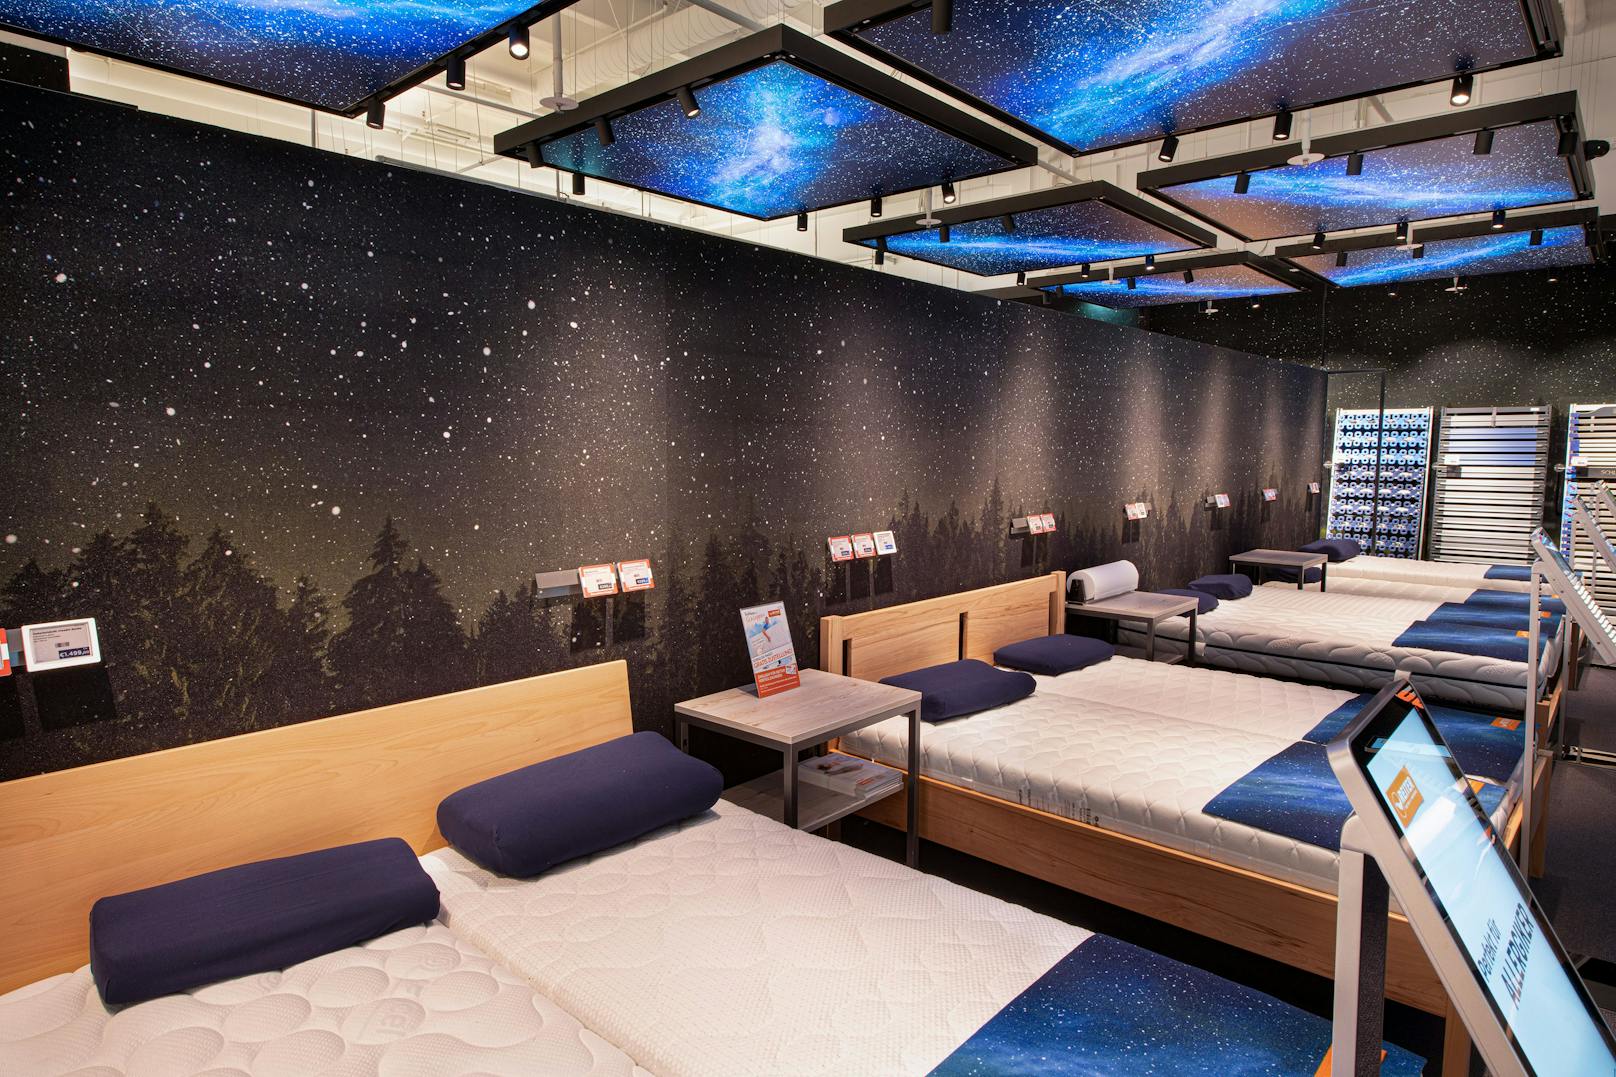 Einer der Highlights im neuen Flagshipstore ist das Schlafstudio mit seinen 14 Doppelbetten zum Probeliegen!